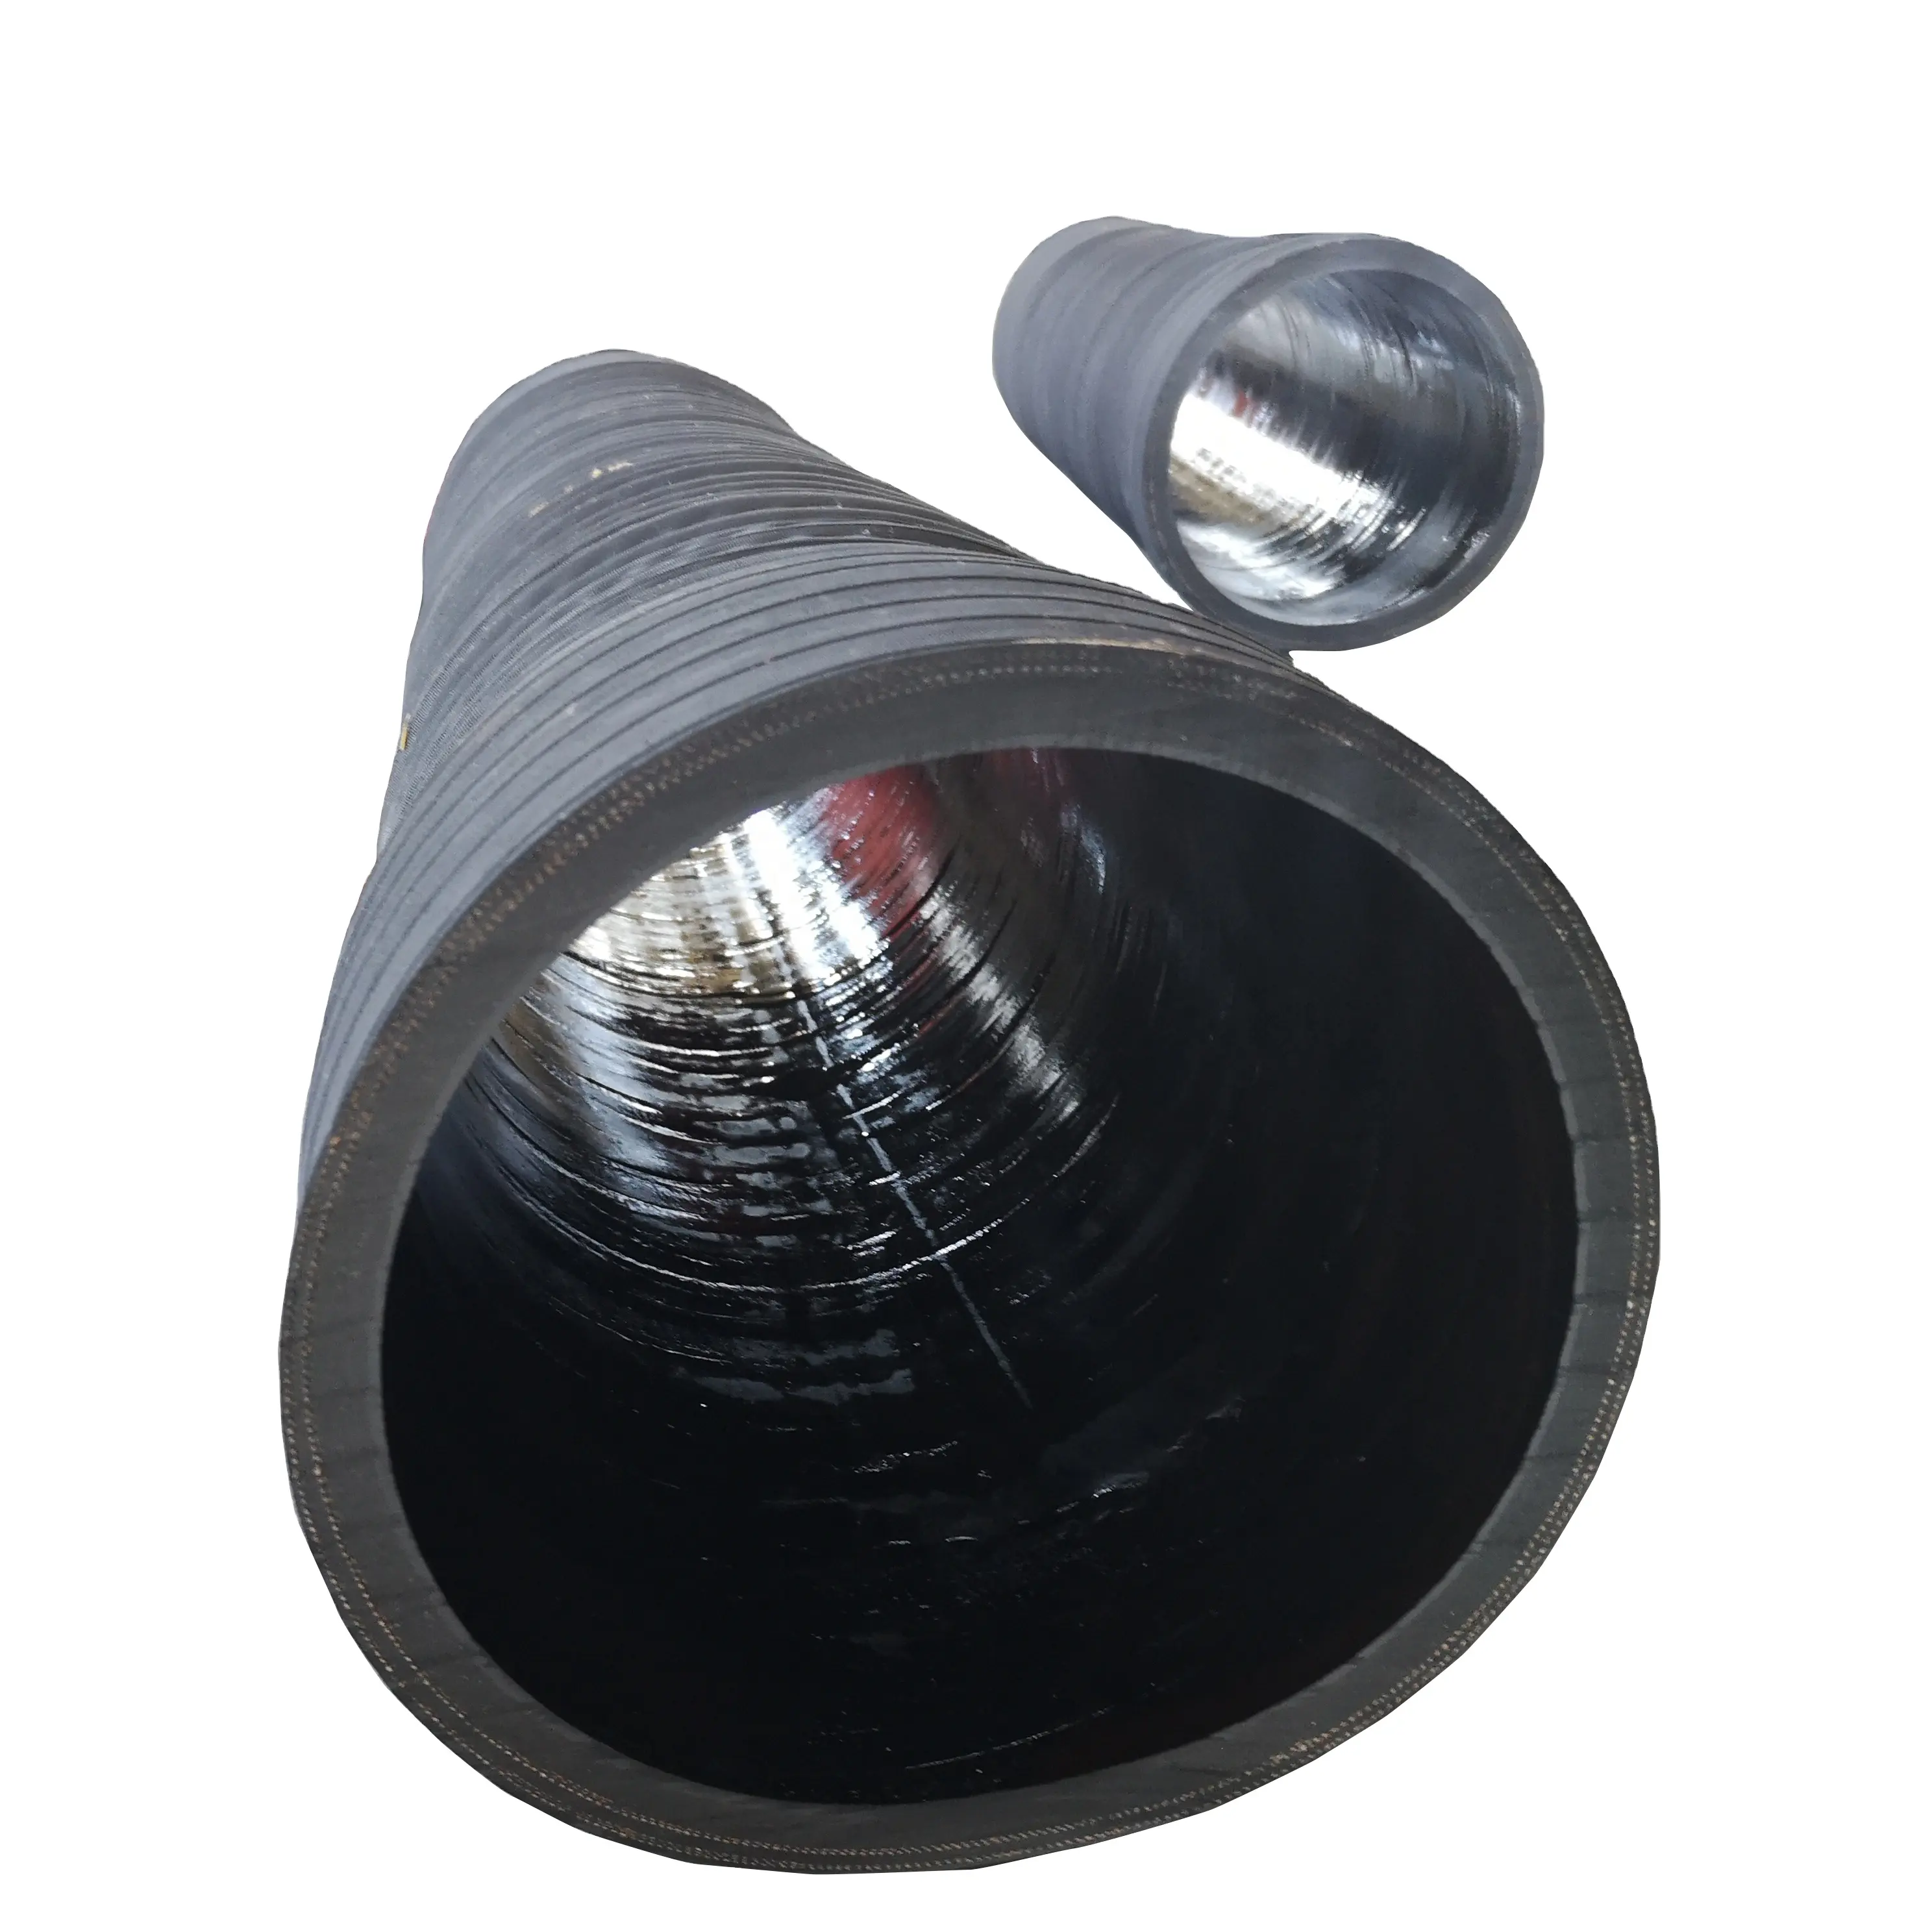 Đường kính lớn hút và thoát nước ống cao su được sử dụng để cung cấp nước và bùn